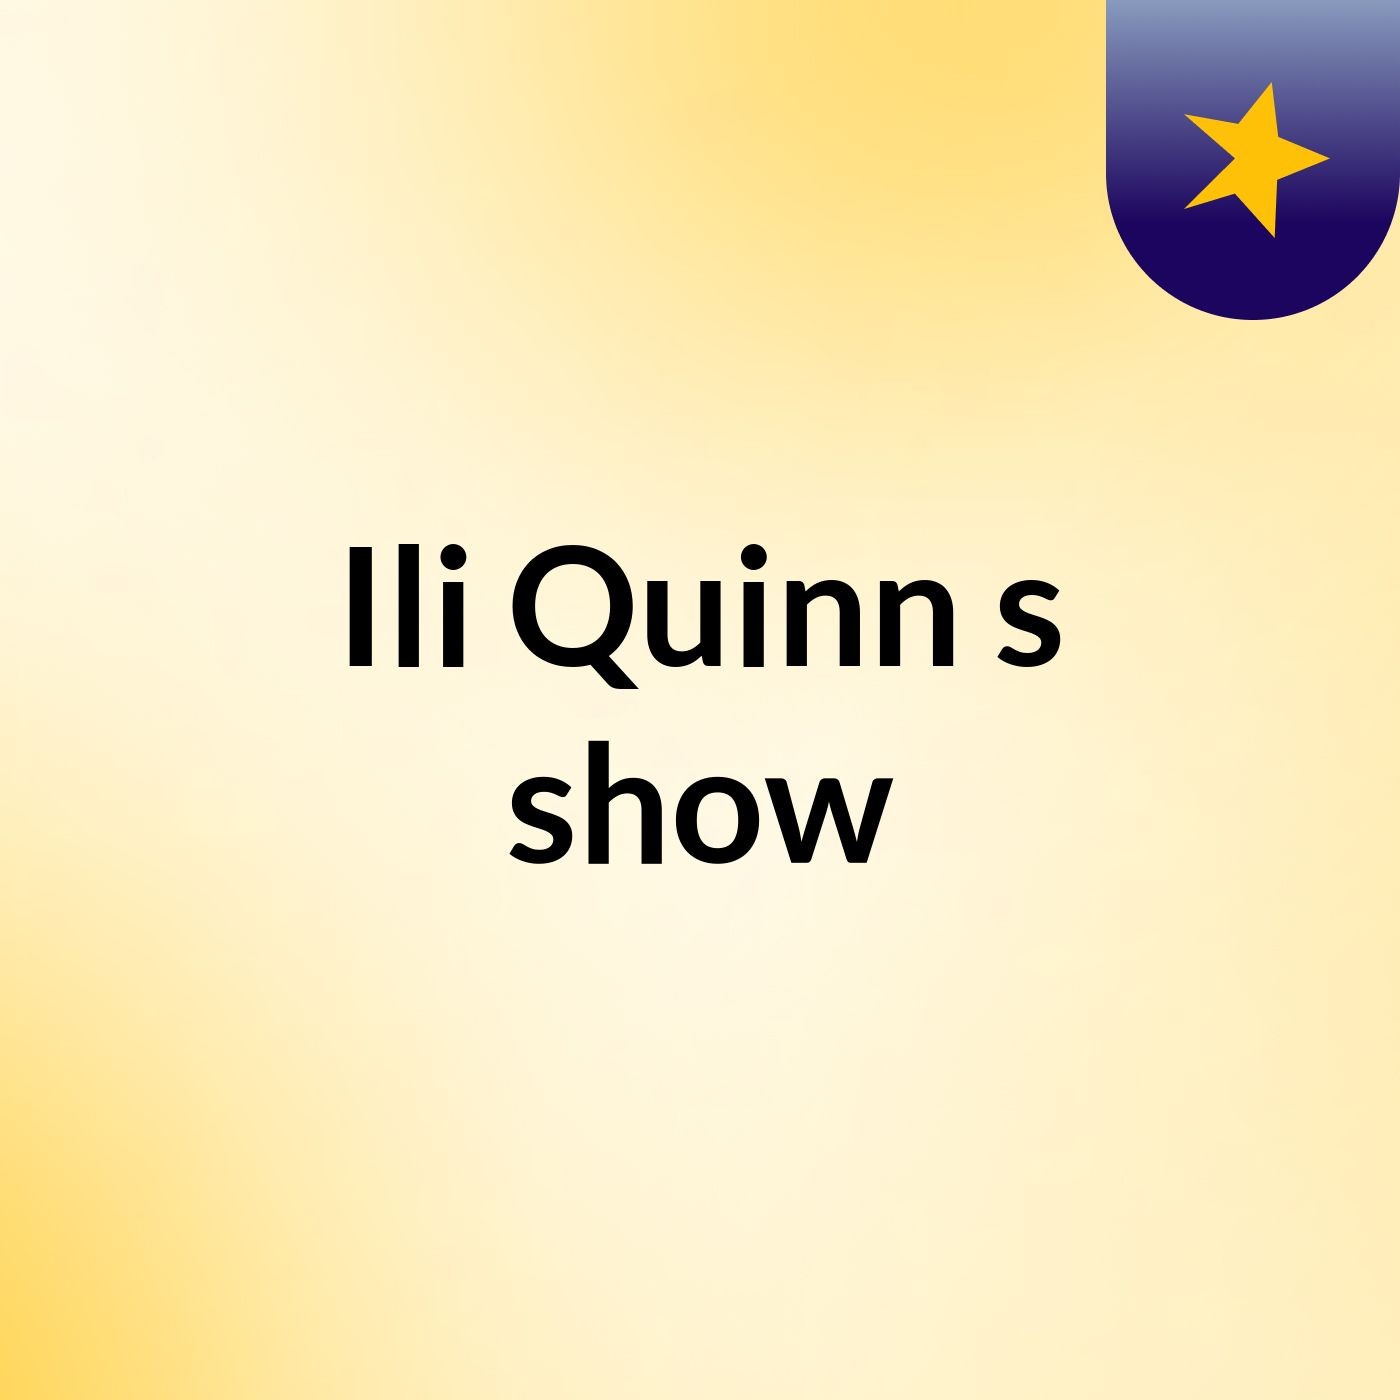 Ili Quinn's show